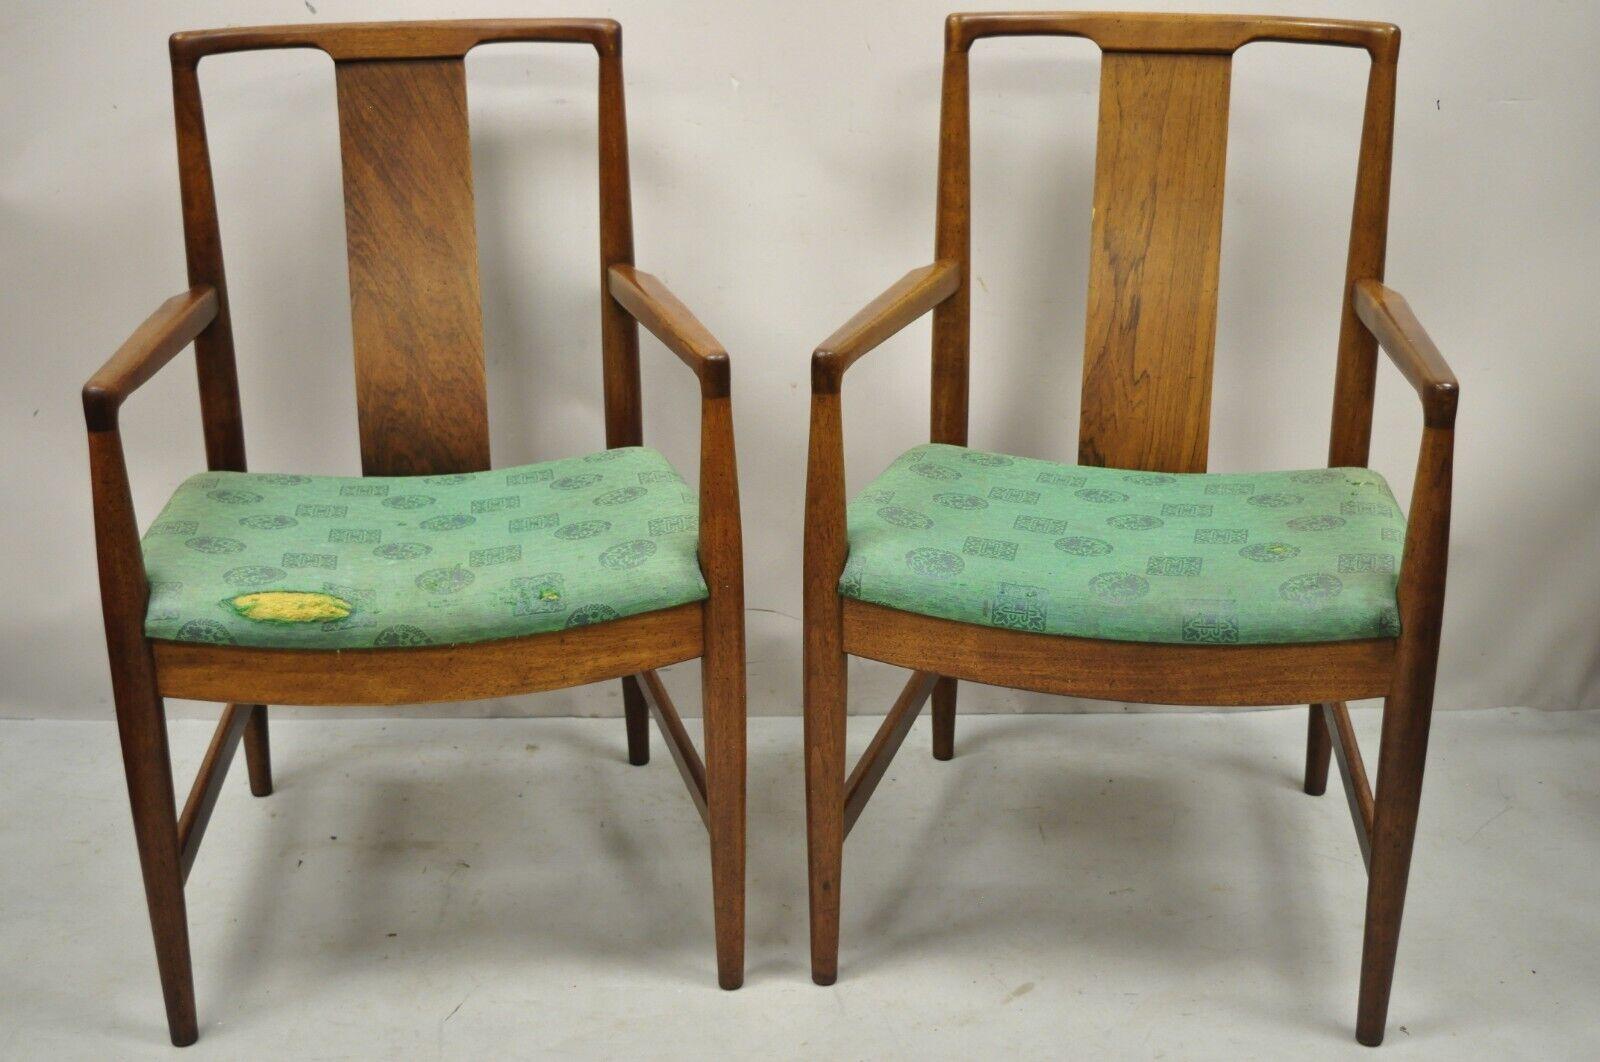 Mid-Century Modern Nussbaum gebogene abgewinkelte Rückenlehne Esszimmer Arm Stühle - ein Paar. Der Artikel zeichnet sich durch schlanke, geschwungene Rückenschienen, abgewinkelte Rückenlehnen, eine schöne Holzmaserung und konische Beine aus, ein